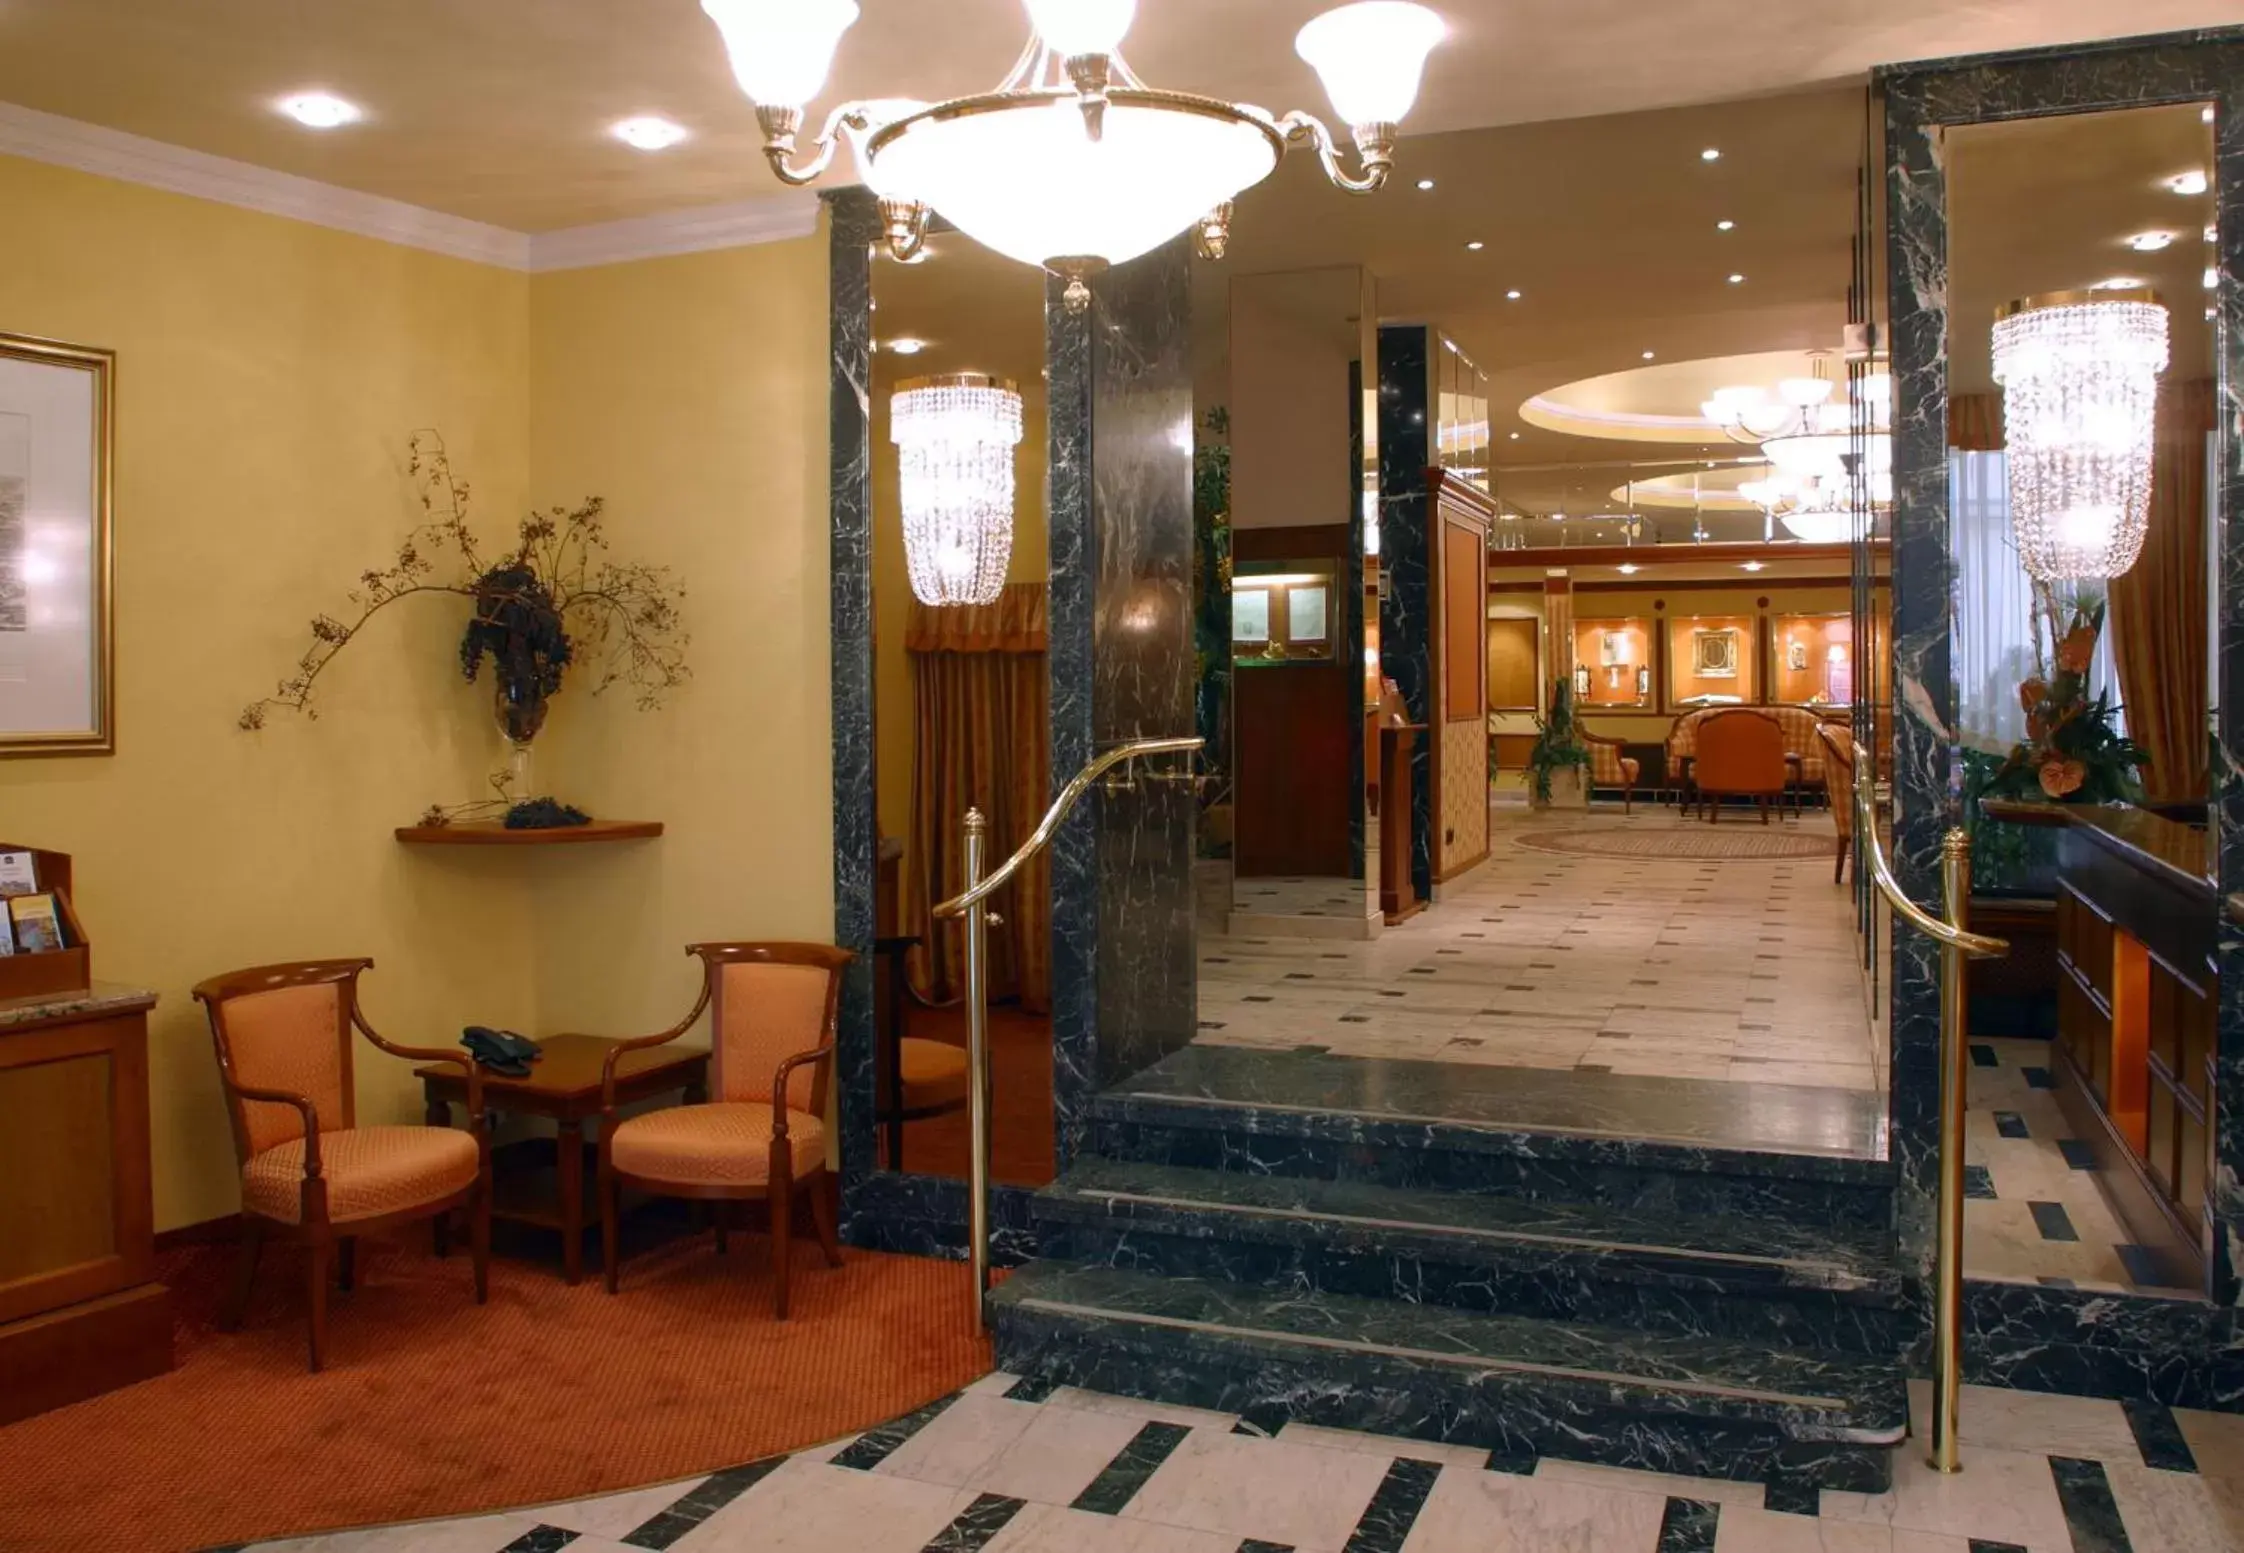 Lobby or reception in Hotel Erzherzog Rainer